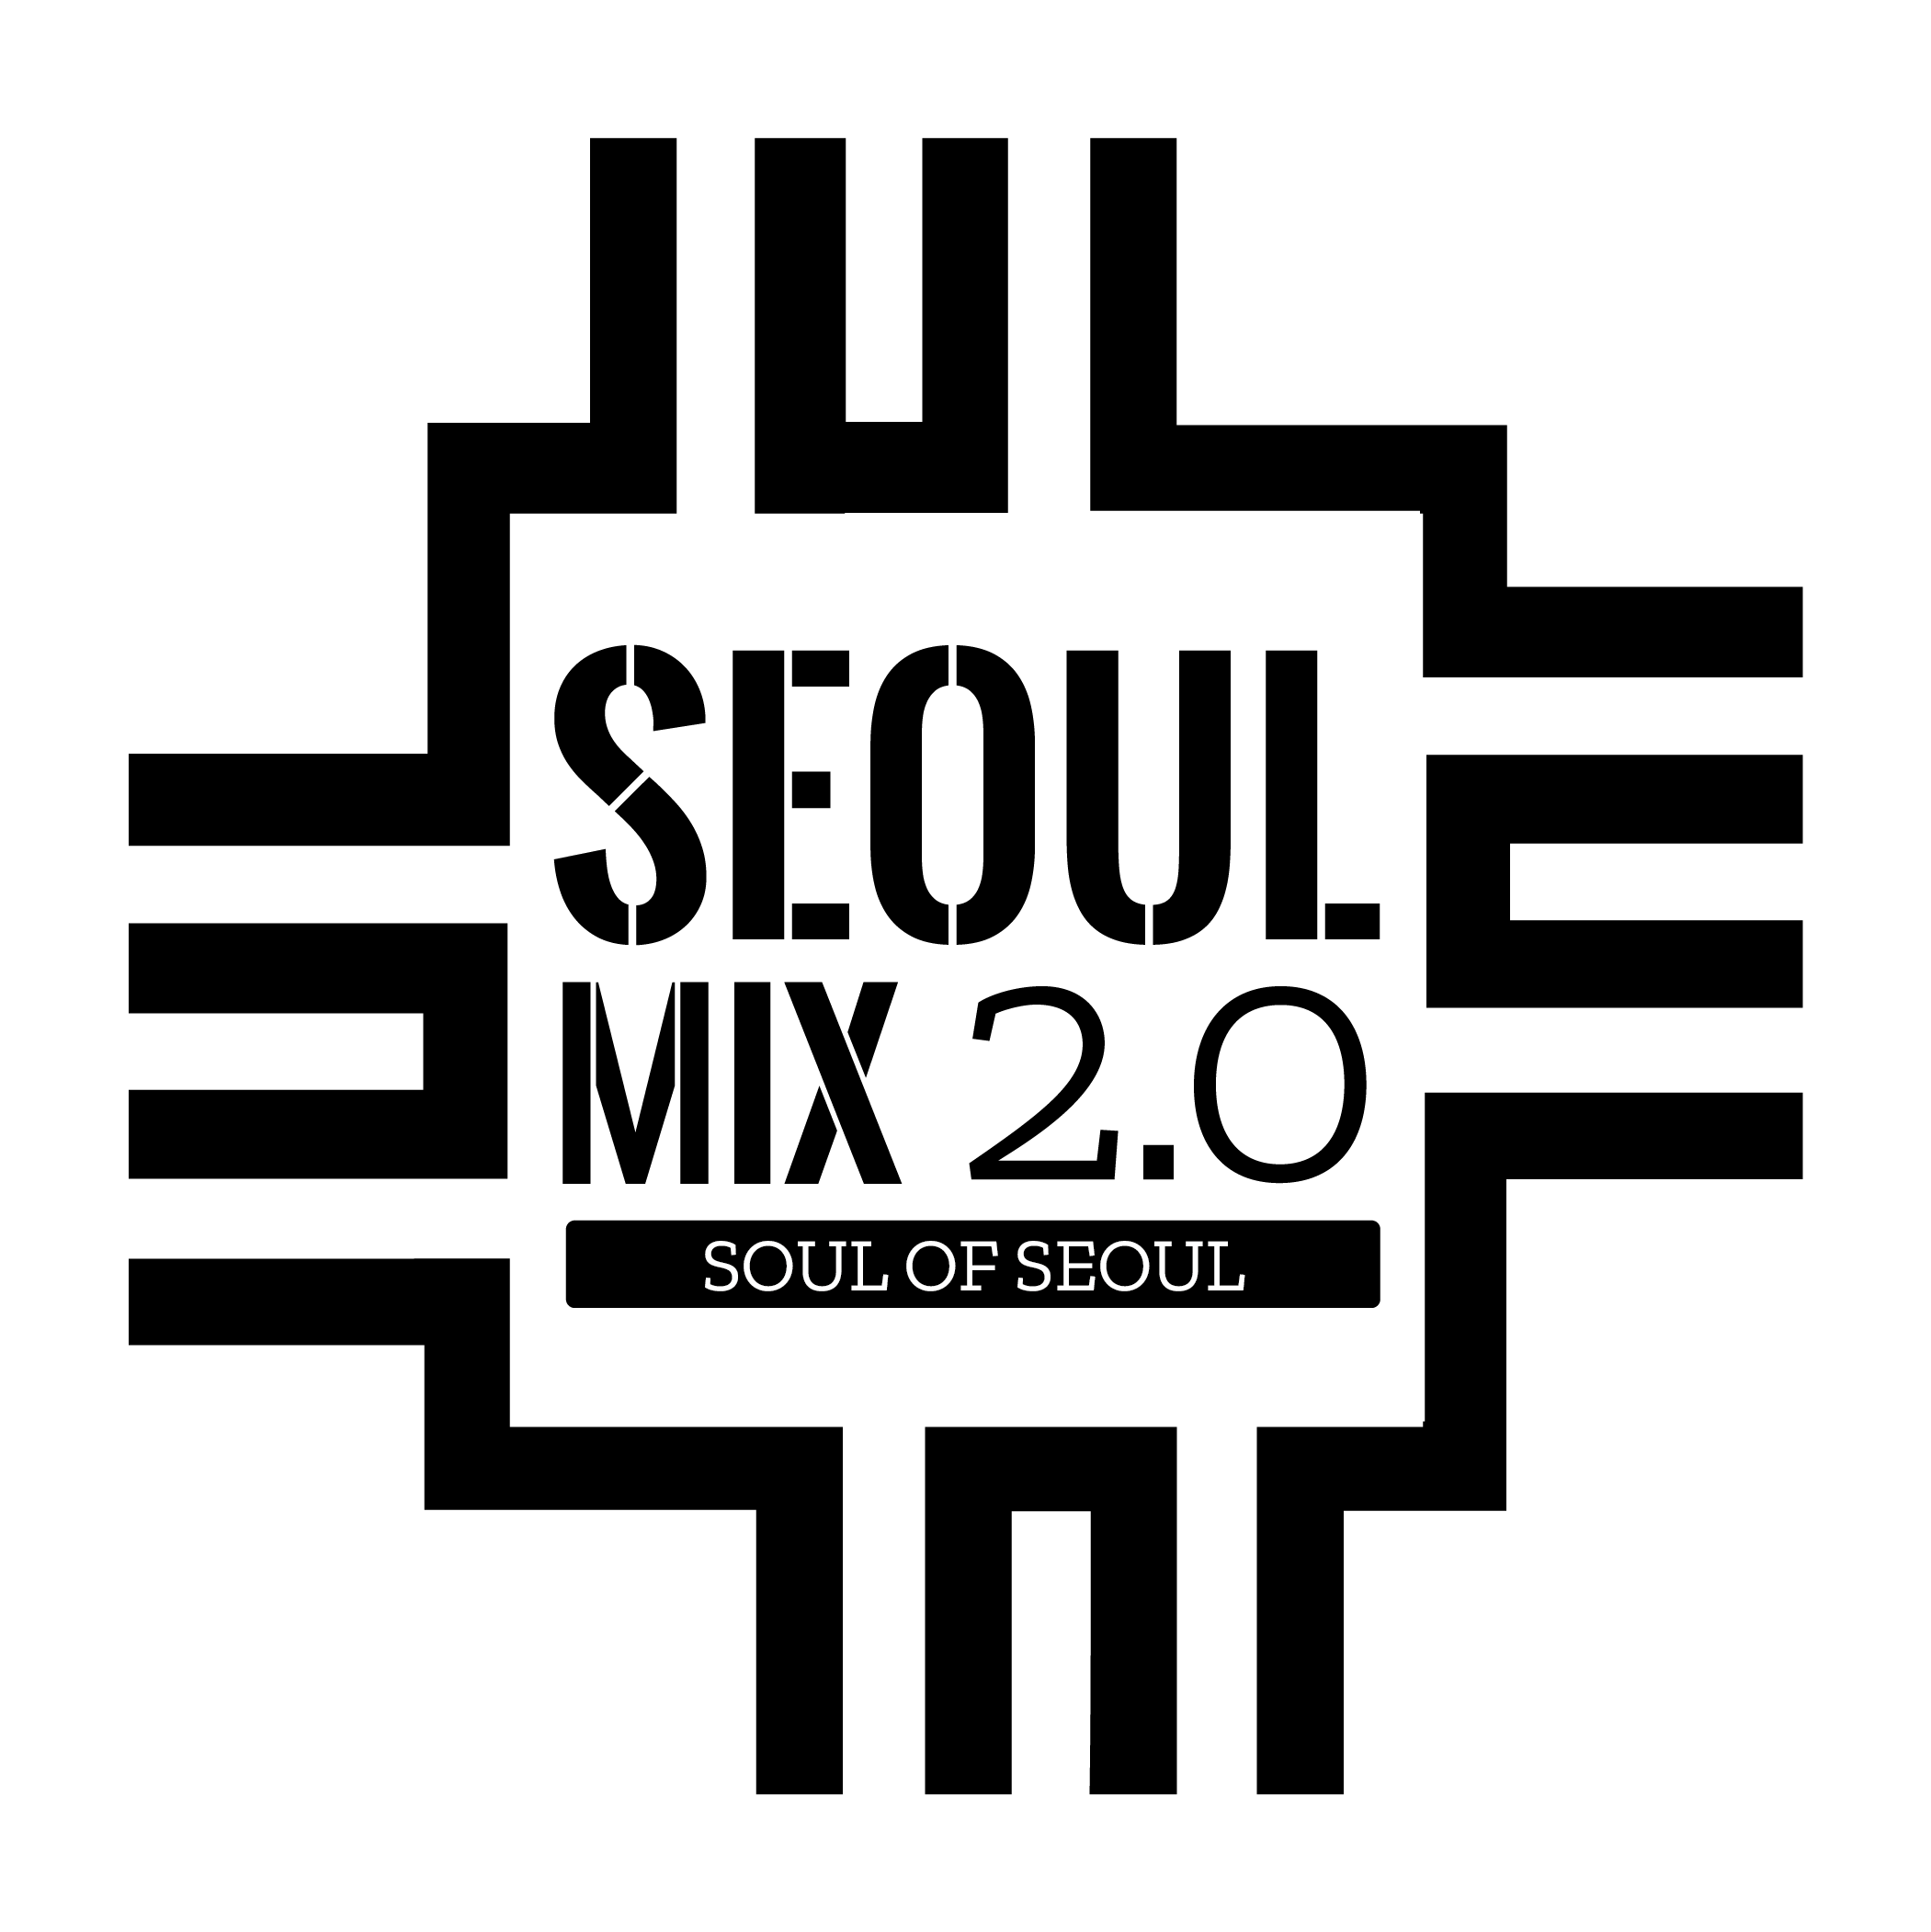 Seoul Mix 2.0